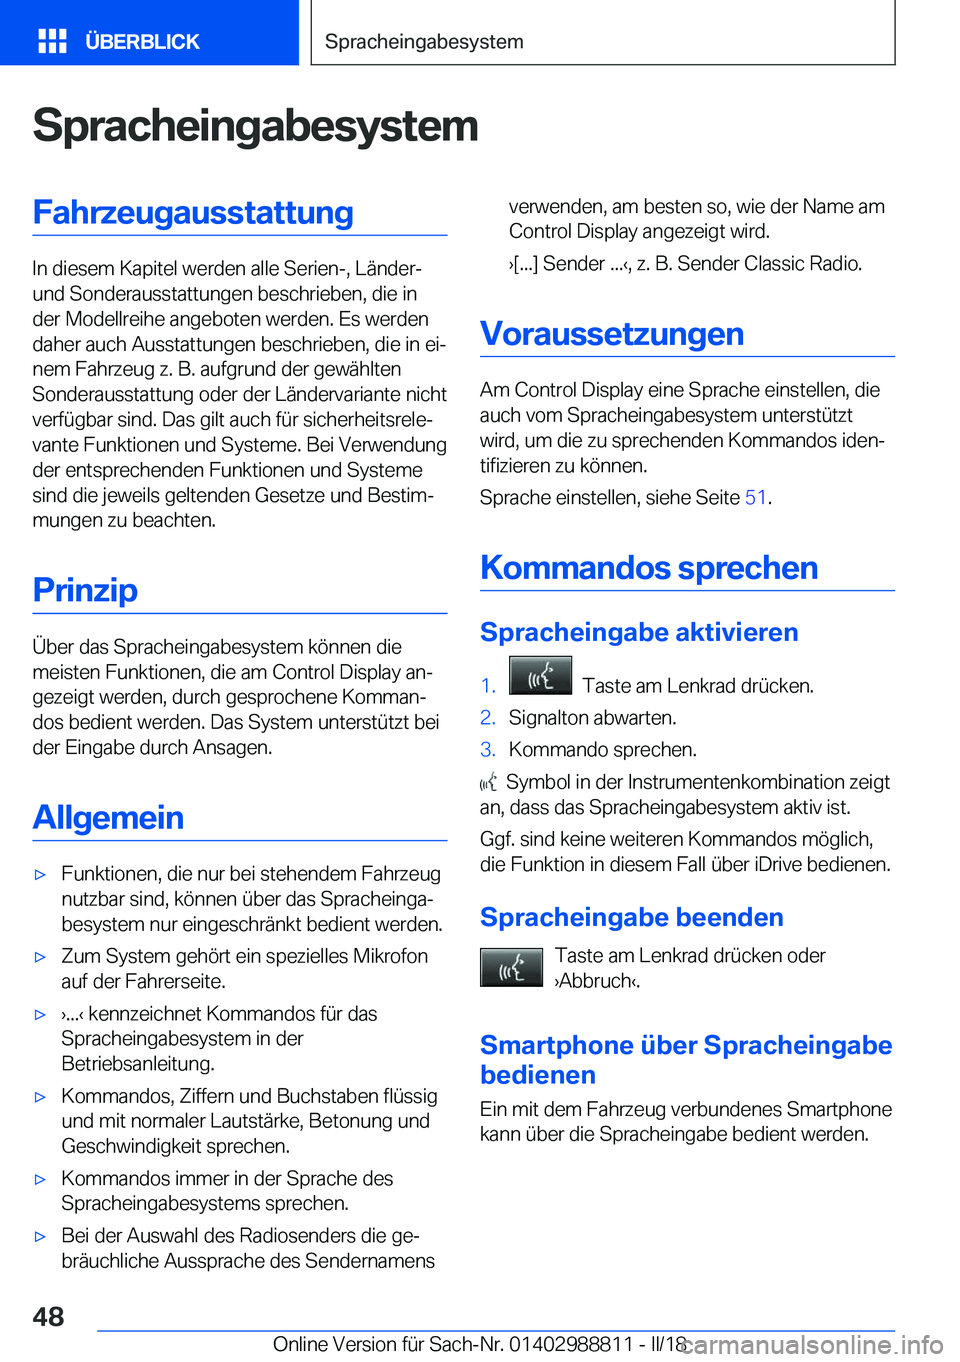 BMW X5 2018  Betriebsanleitungen (in German) �S�p�r�a�c�h�e�i�n�g�a�b�e�s�y�s�t�e�m�F�a�h�r�z�e�u�g�a�u�s�s�t�a�t�t�u�n�g
�I�n� �d�i�e�s�e�m� �K�a�p�i�t�e�l� �w�e�r�d�e�n� �a�l�l�e� �S�e�r�i�e�n�-�,� �L�